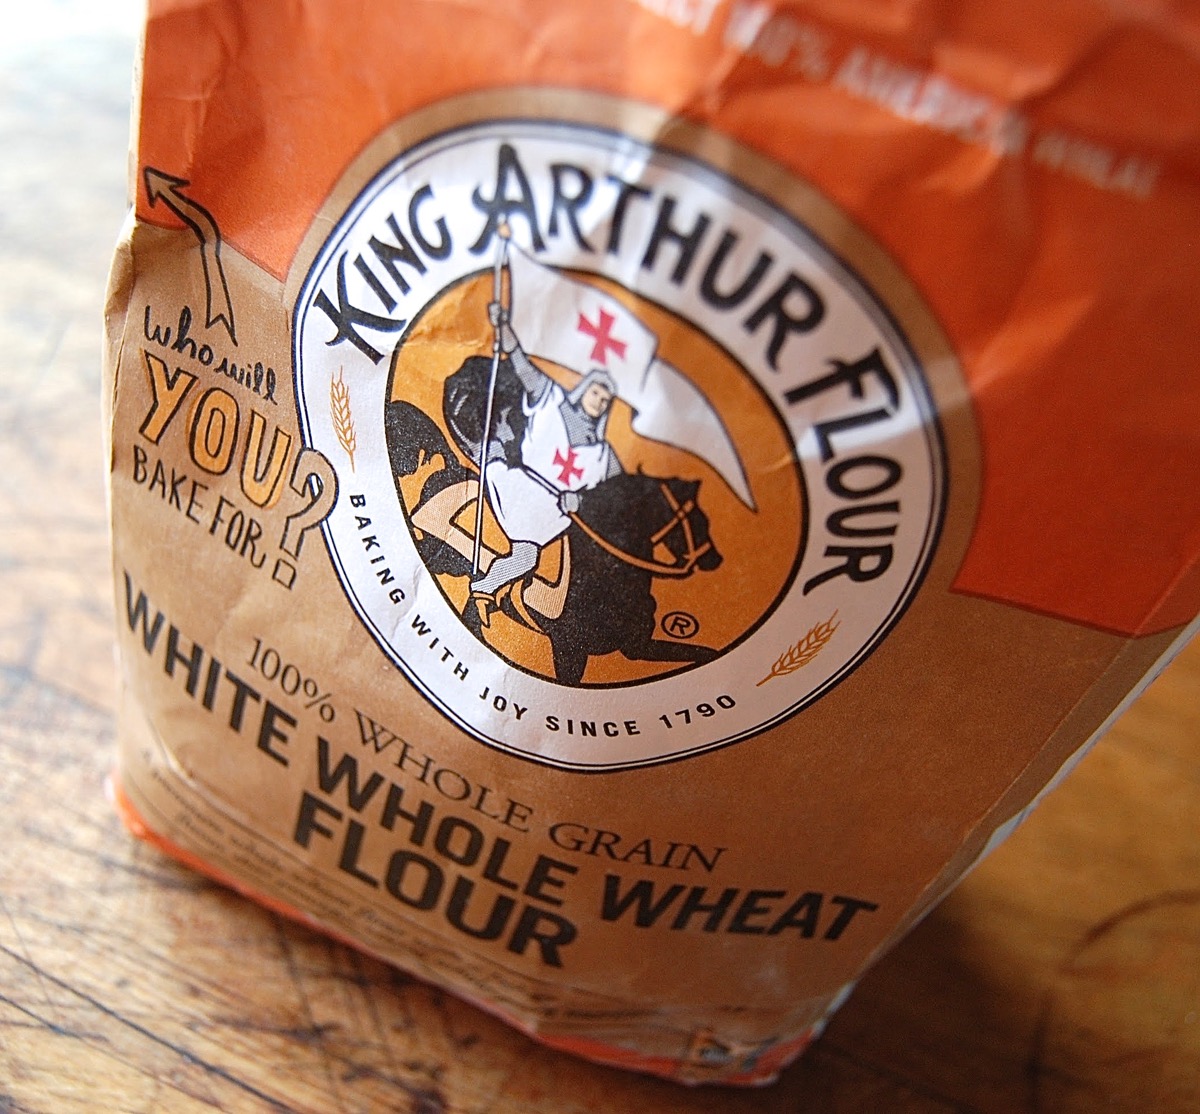 Open bag of King Arthur White Whole Wheat Flour.